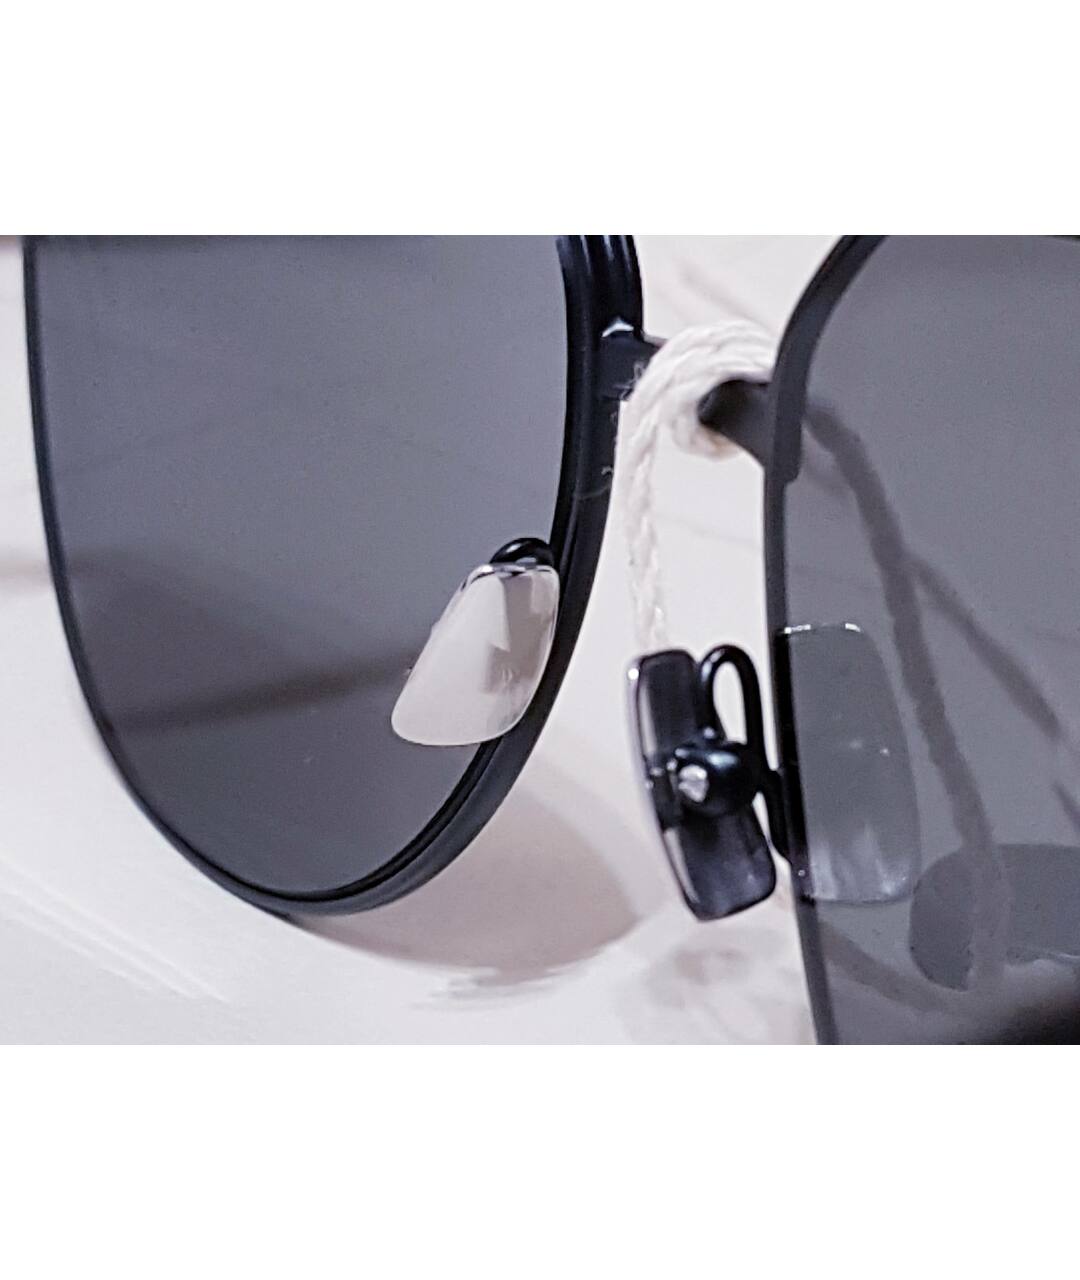 SAINT LAURENT Черные металлические солнцезащитные очки, фото 6